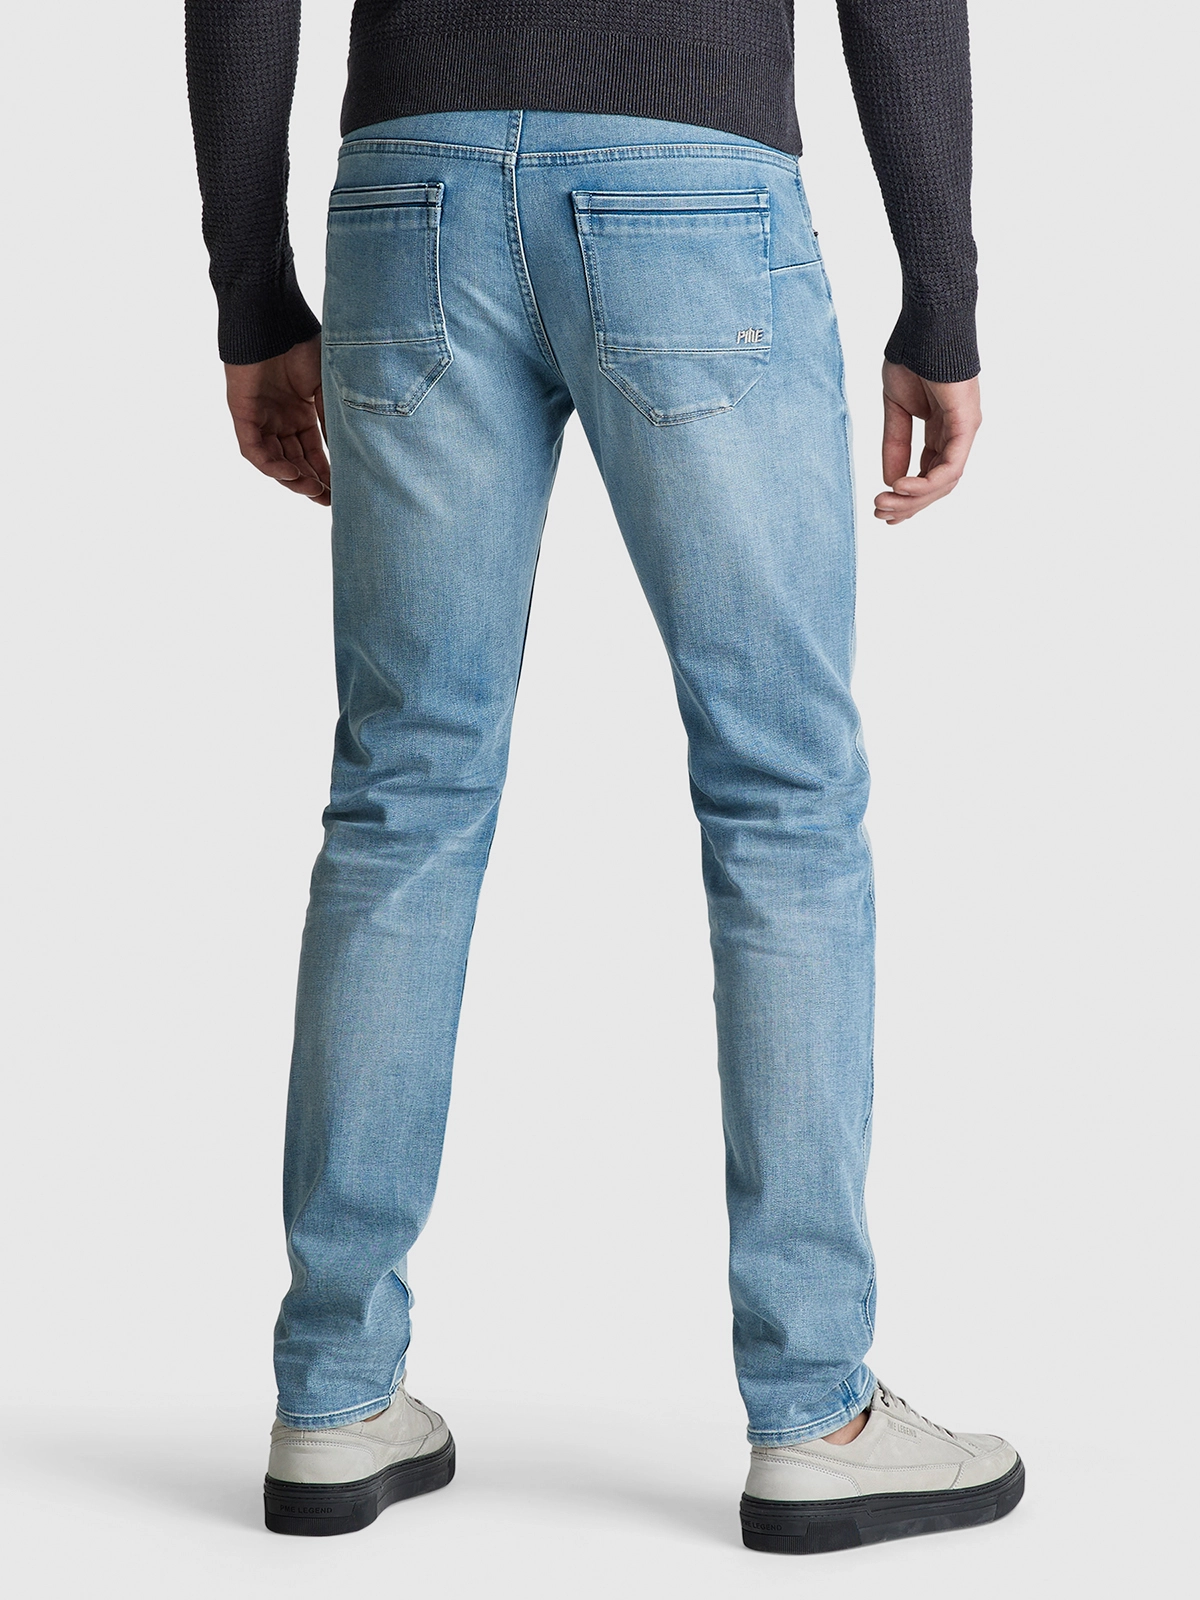 PME Legend Jeans | Roetgerink Online Herenjeans